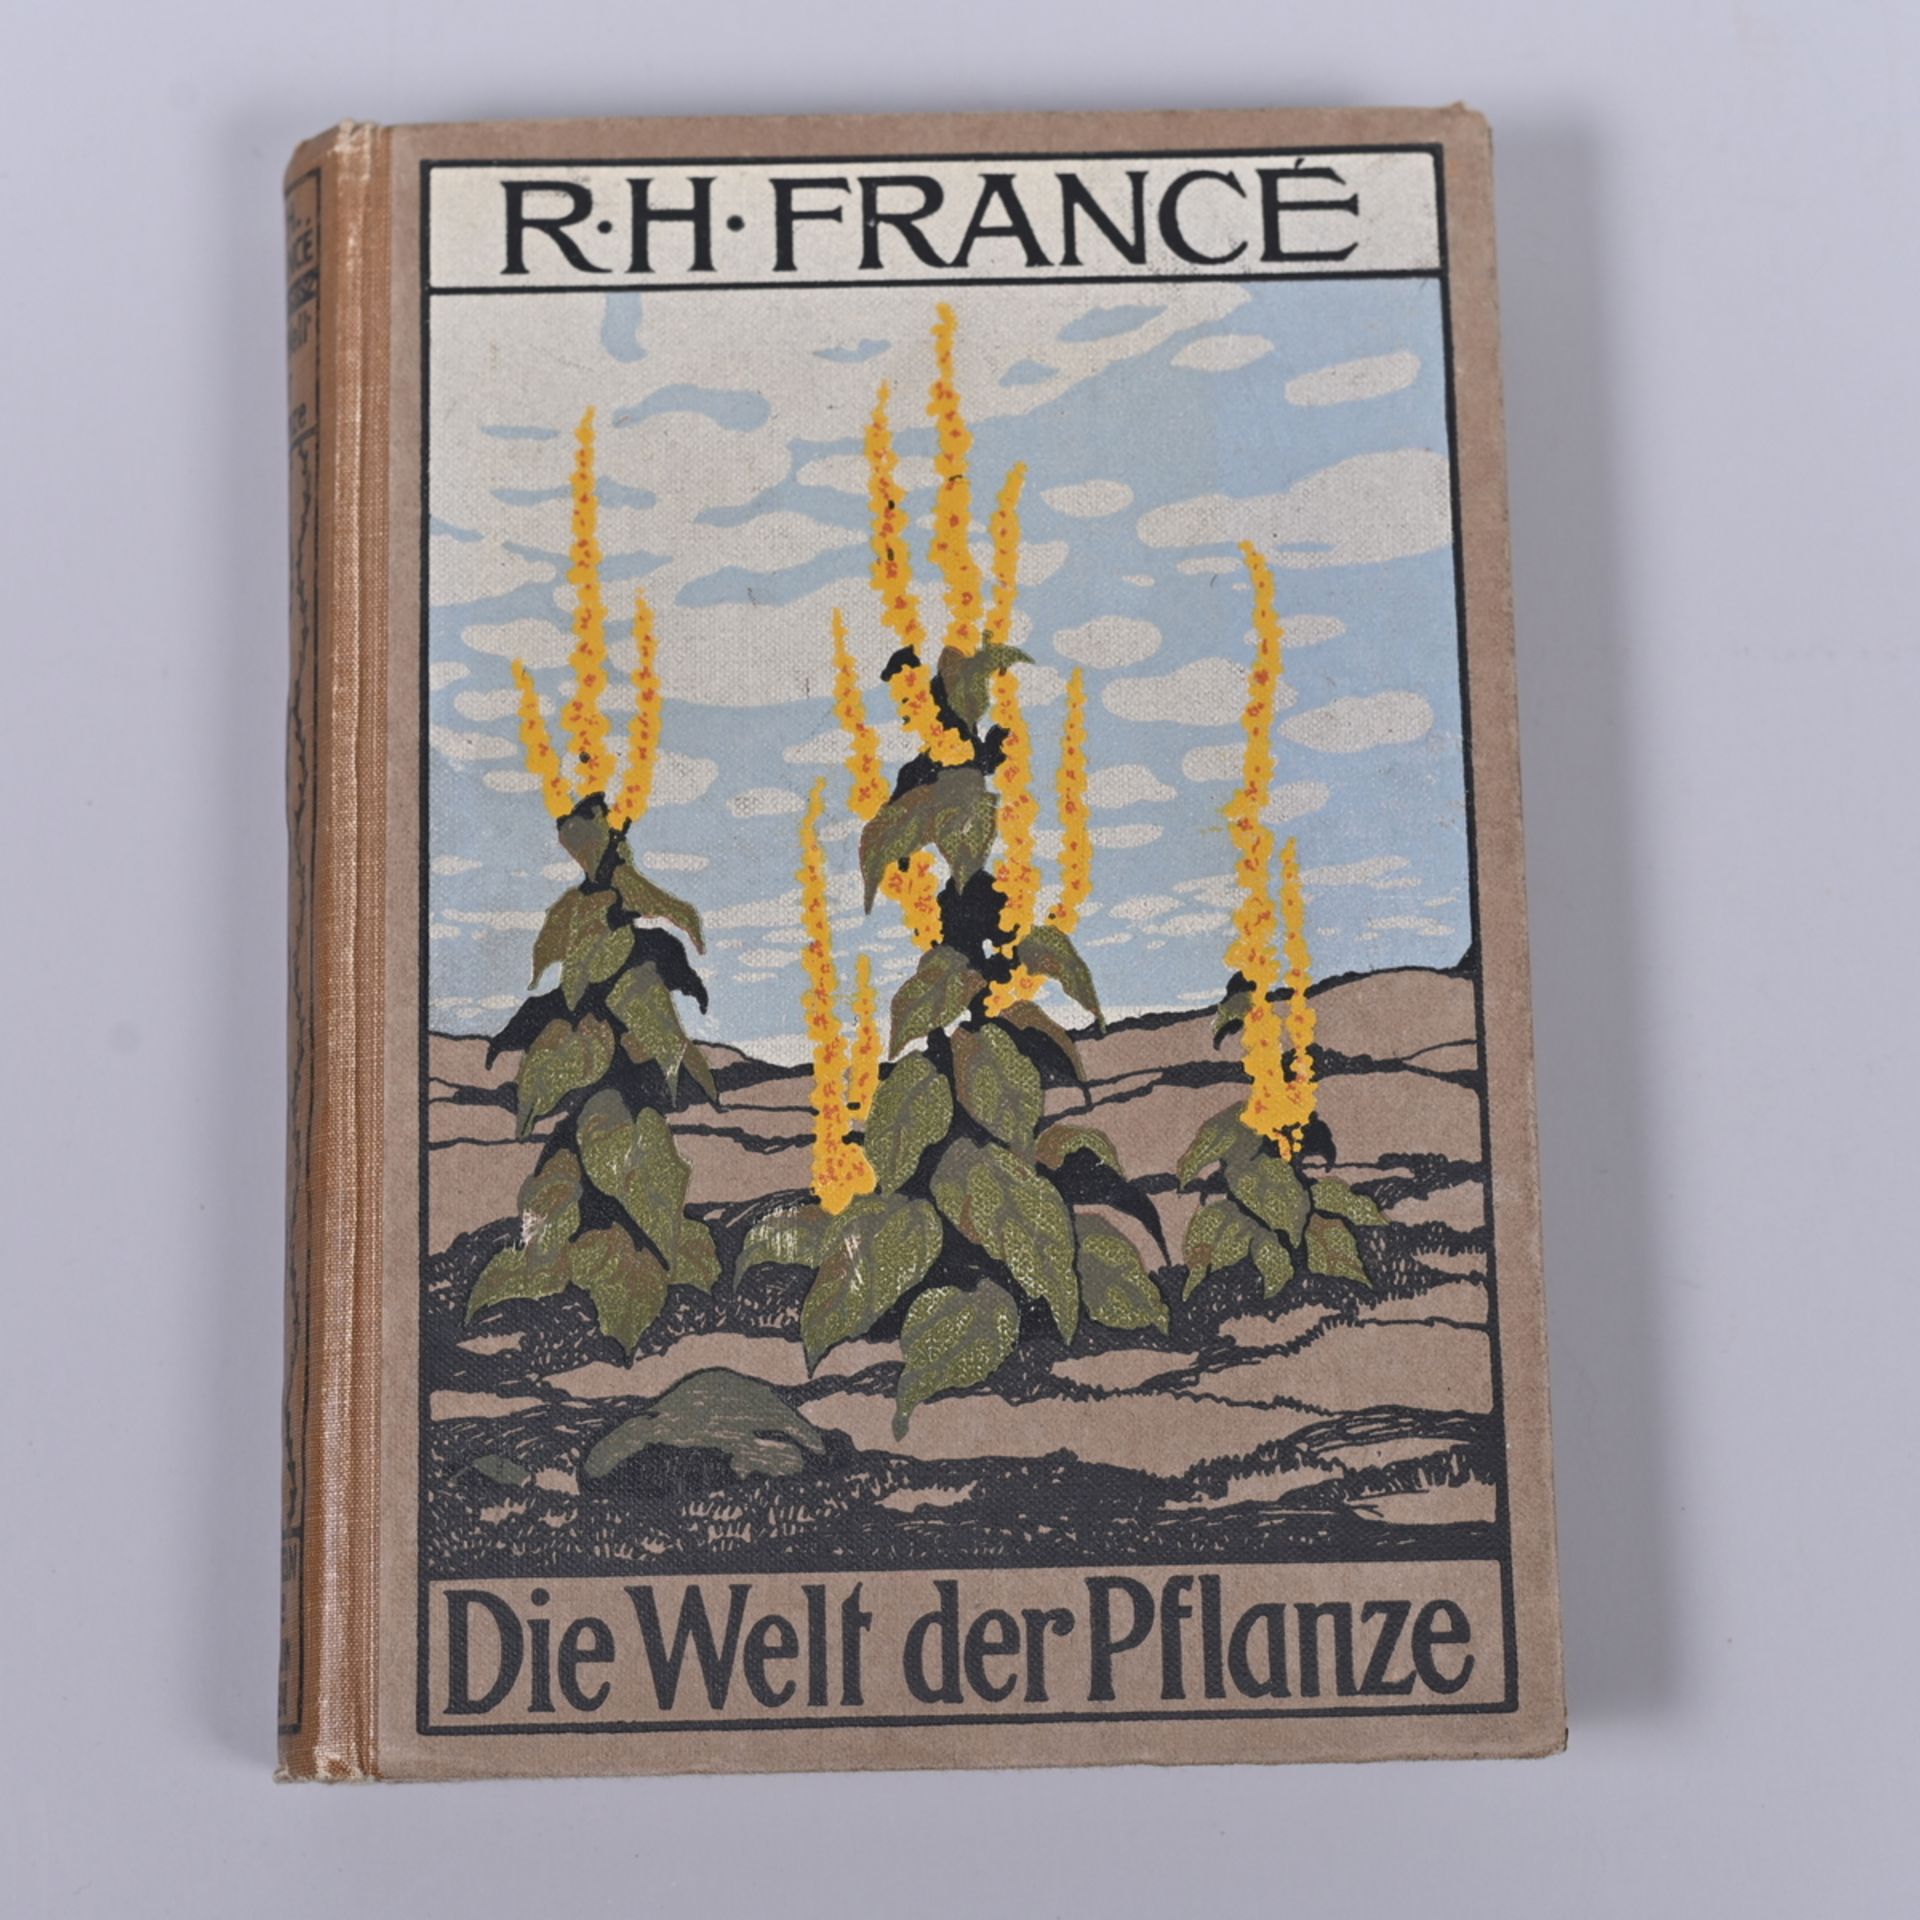 "Die Welt der Pflanze", R.H. Francè, Ullstein&Co Berlin/Wien 1912, eine volkstümliche Botanik mit